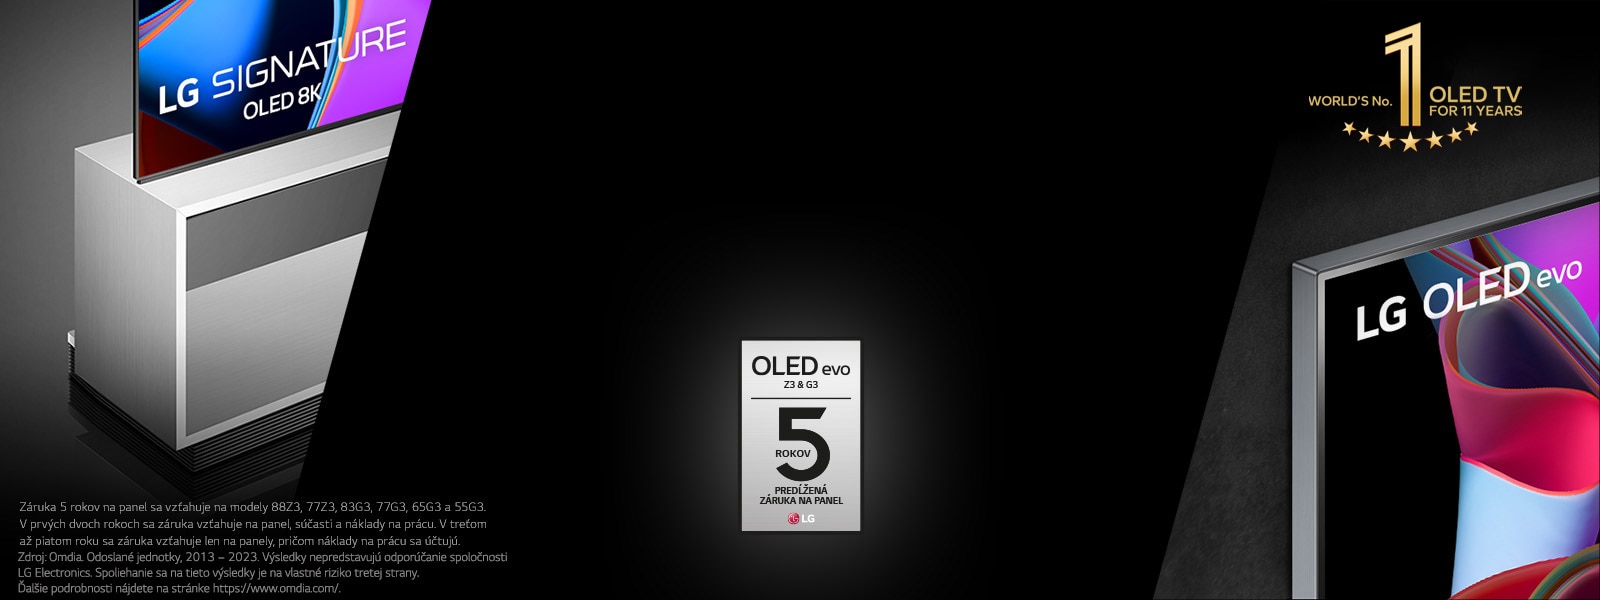 Päťročná záruka na panel na LG OLED65G3 a LG OLED65Z3